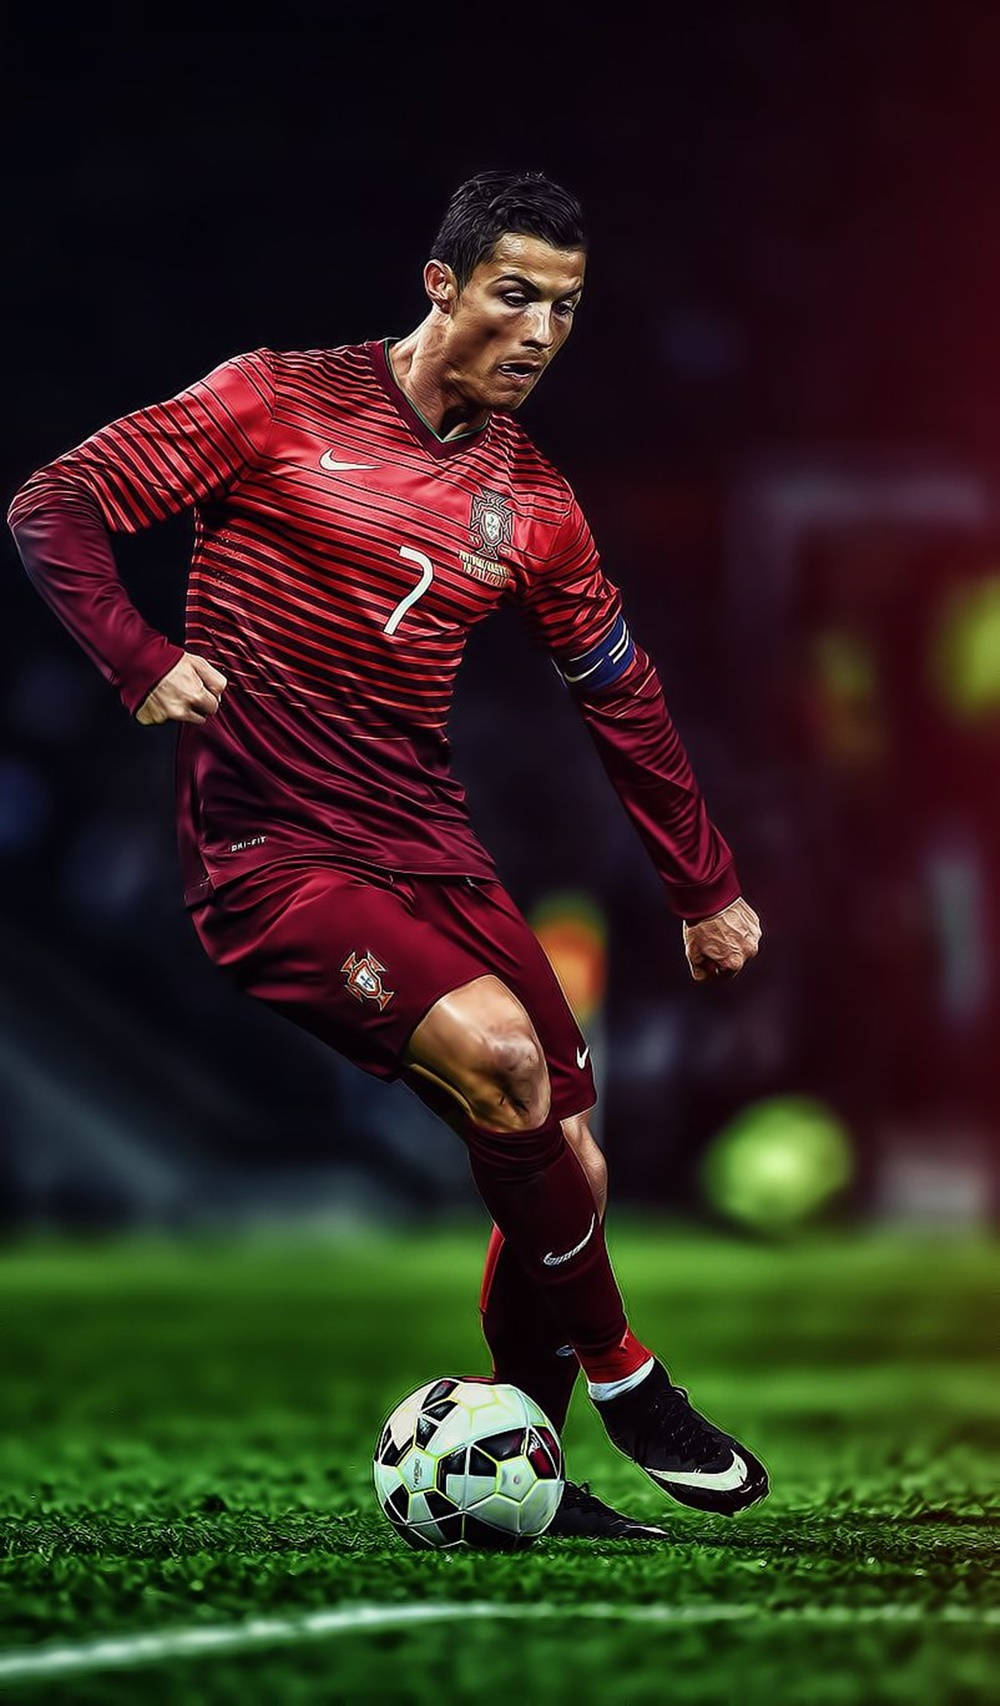 Superstjärnancristiano Ronaldo I En Cool Jongleringsposition. Wallpaper